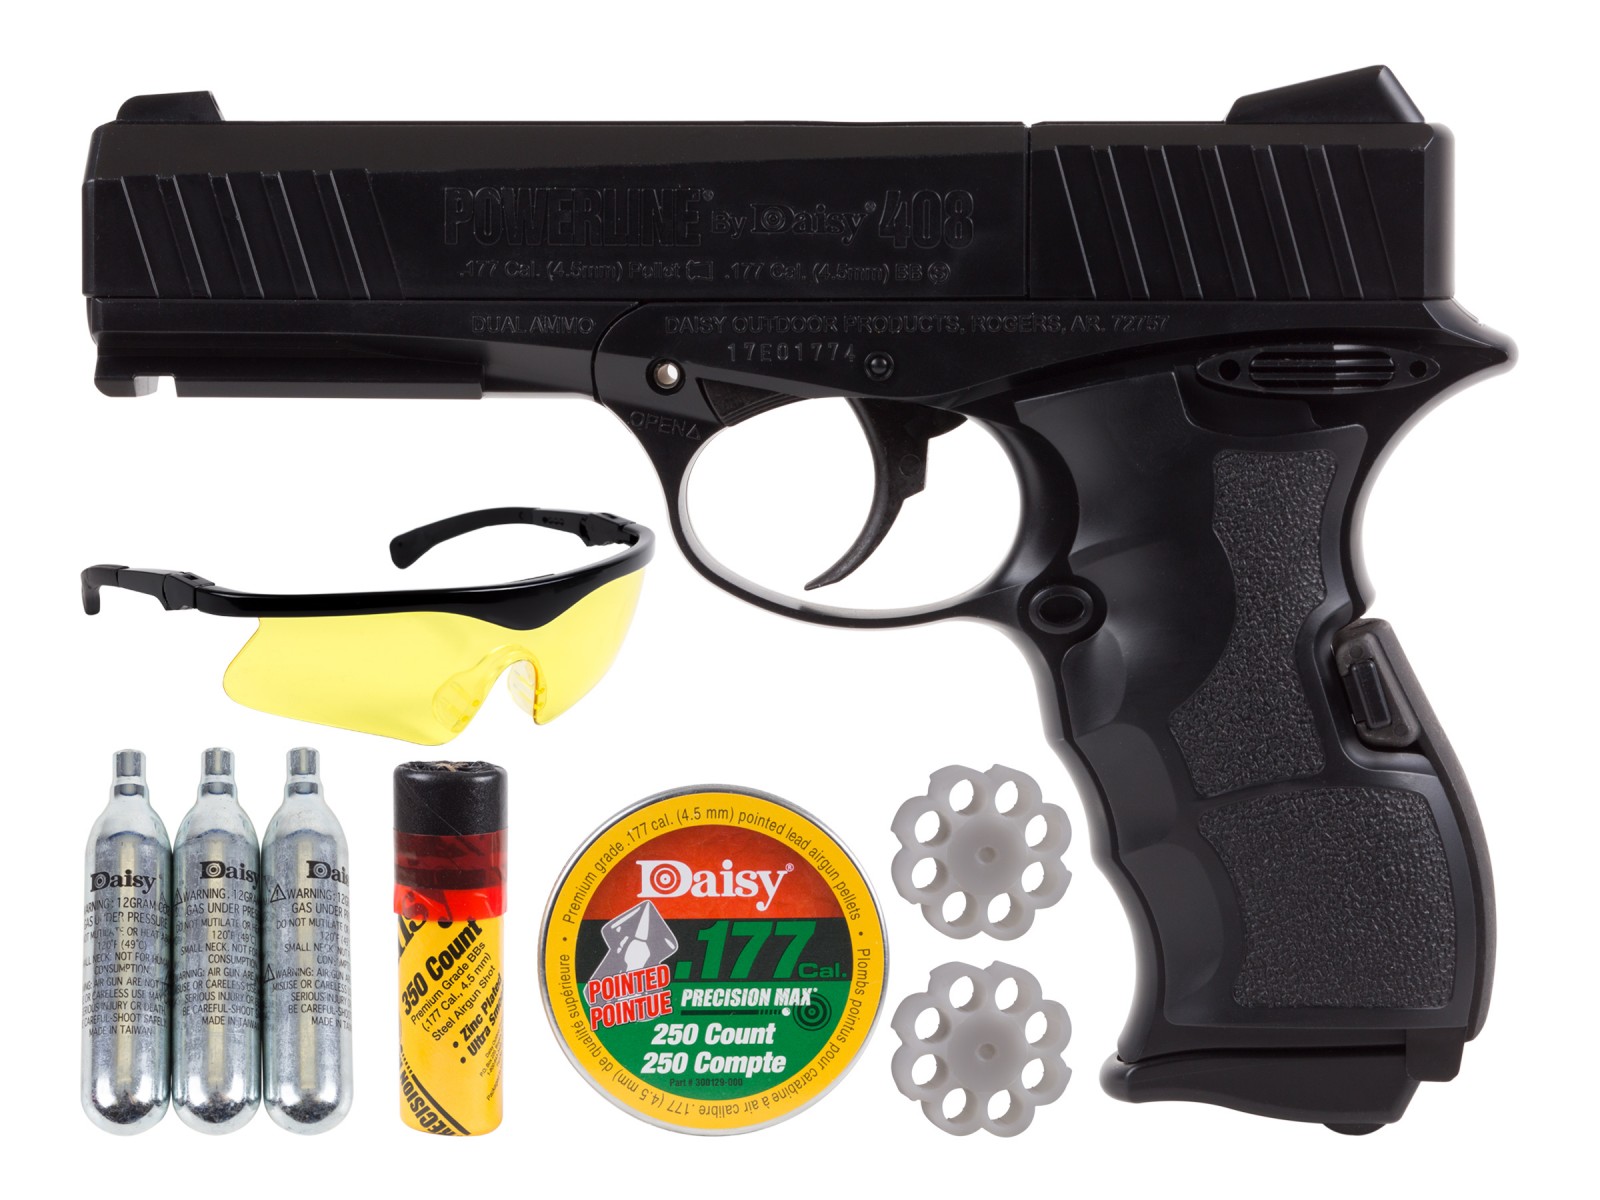 Daisy 408 CO2 Dual Ammo Pistol Kit